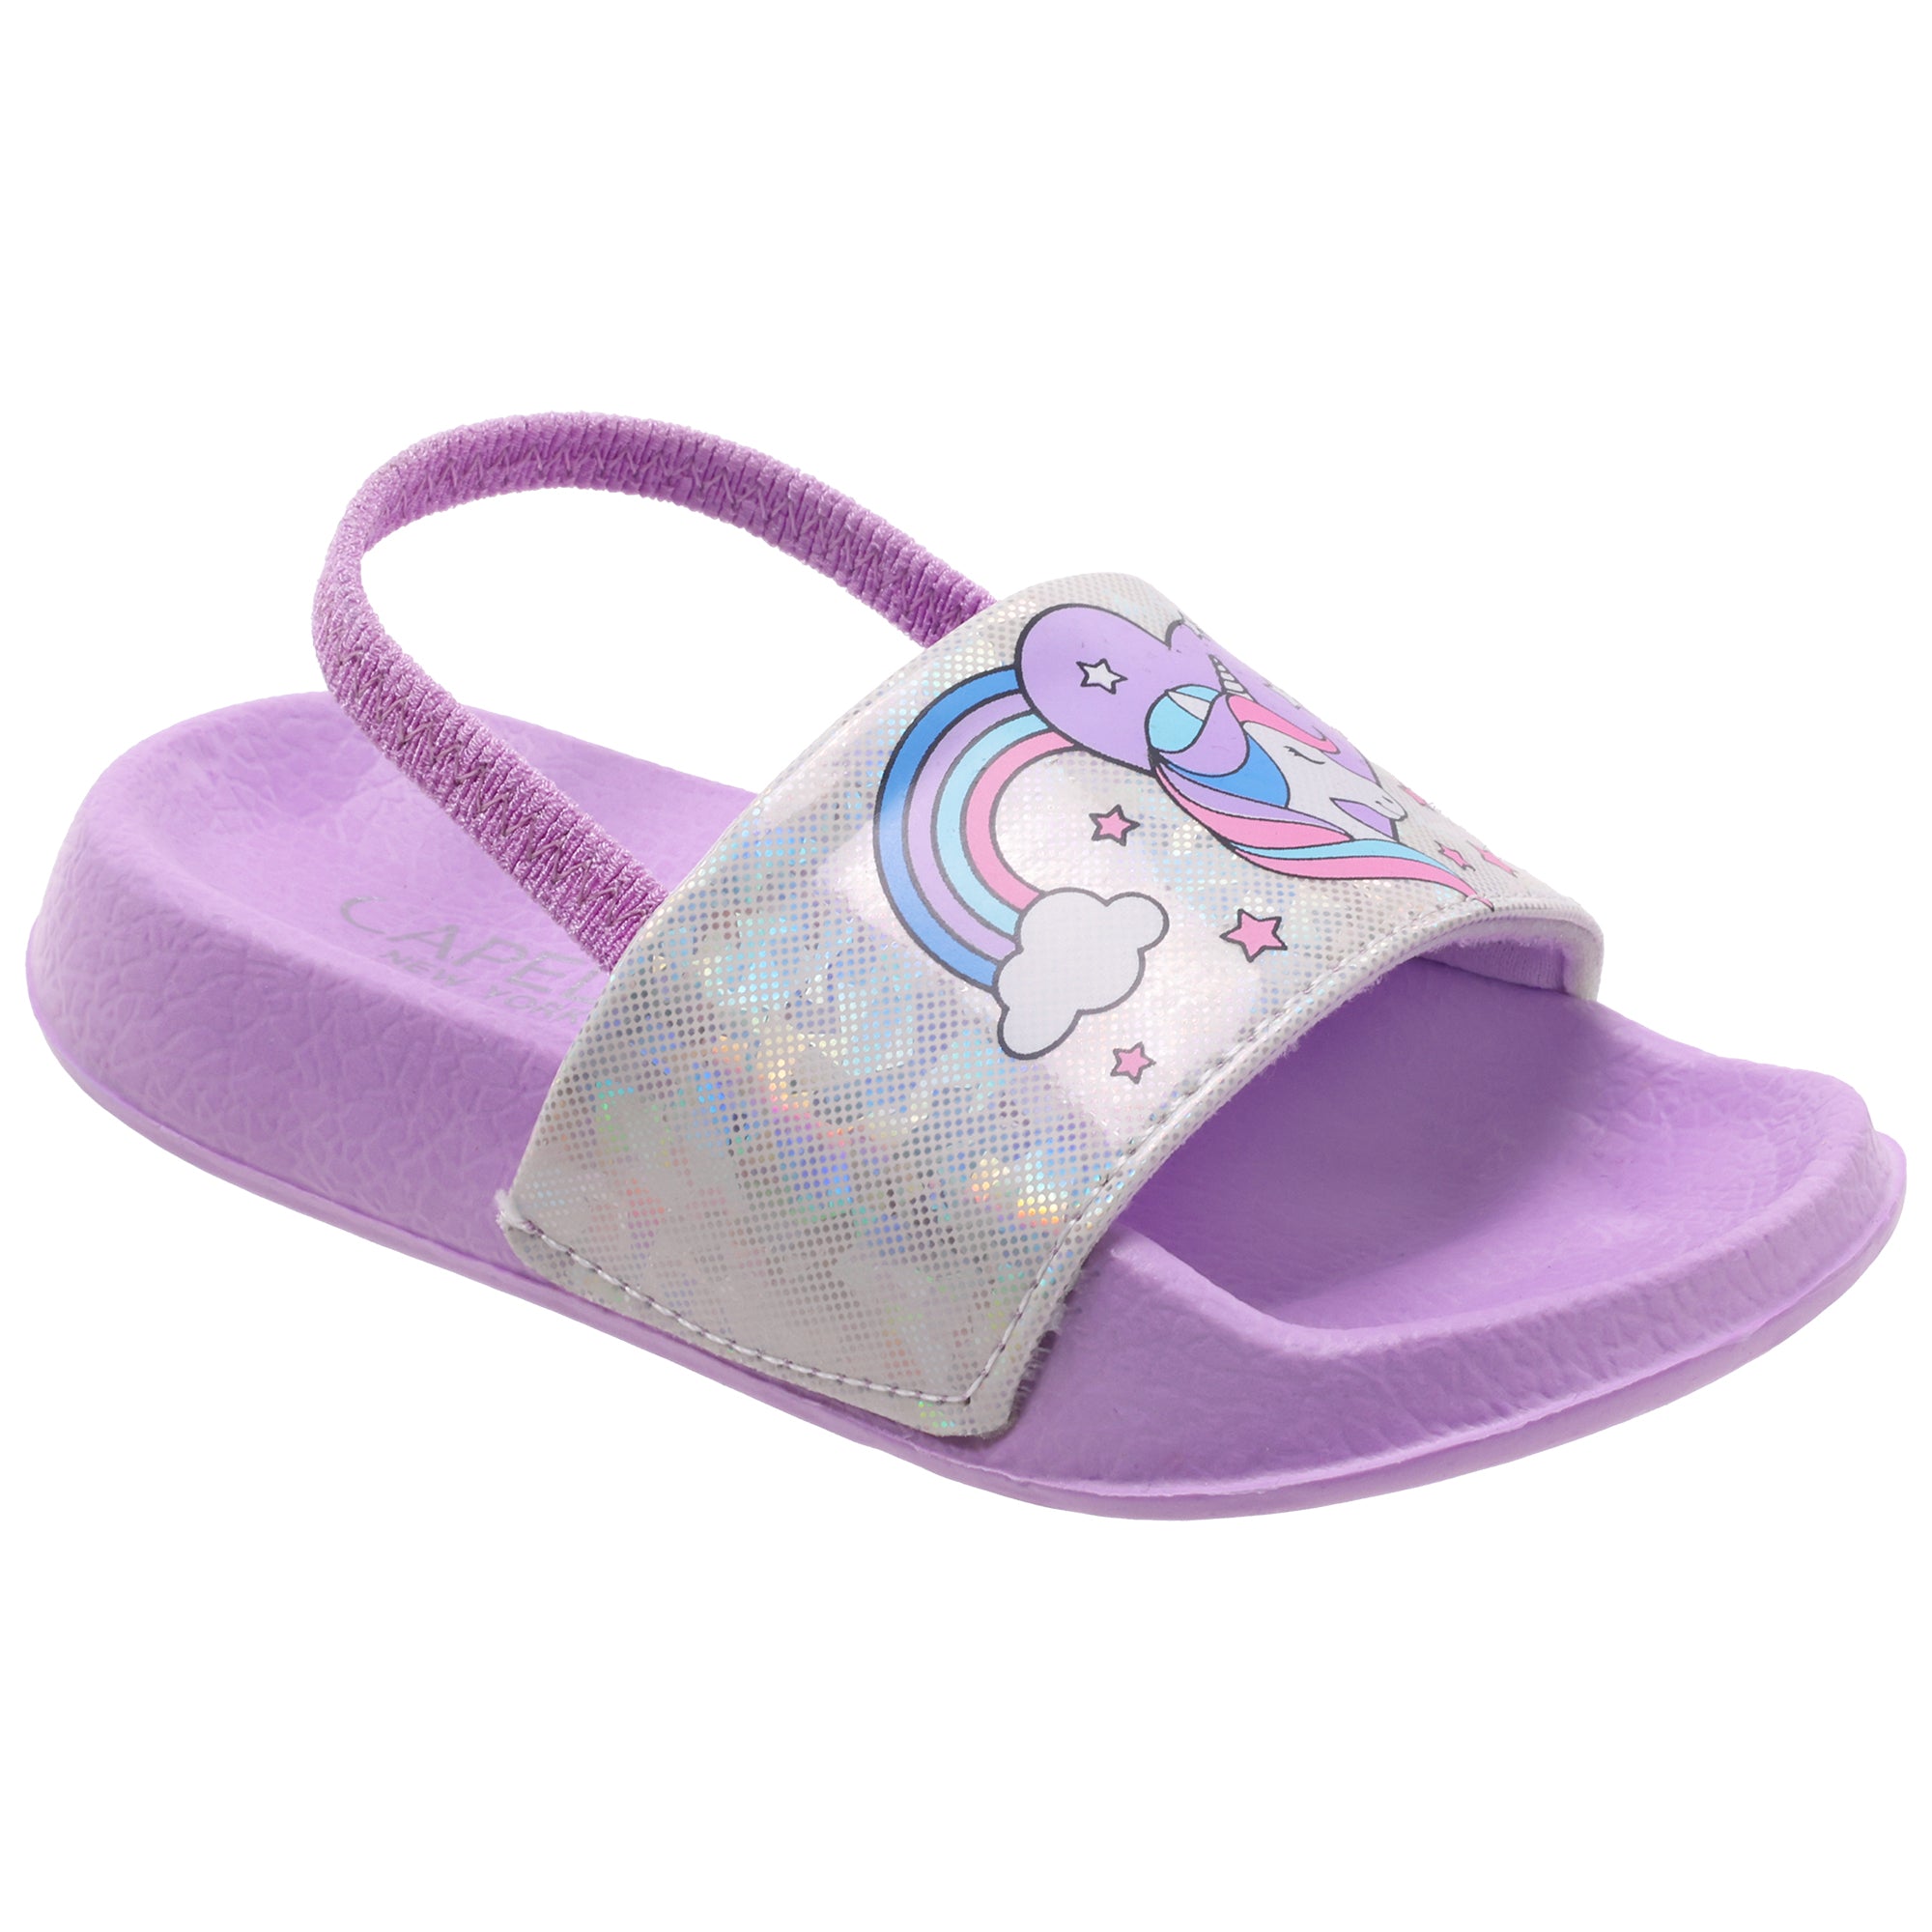 Unicorn Flip Flops for Kids Girls Toddler Little Kid Beach Slippers Pink  Size 1